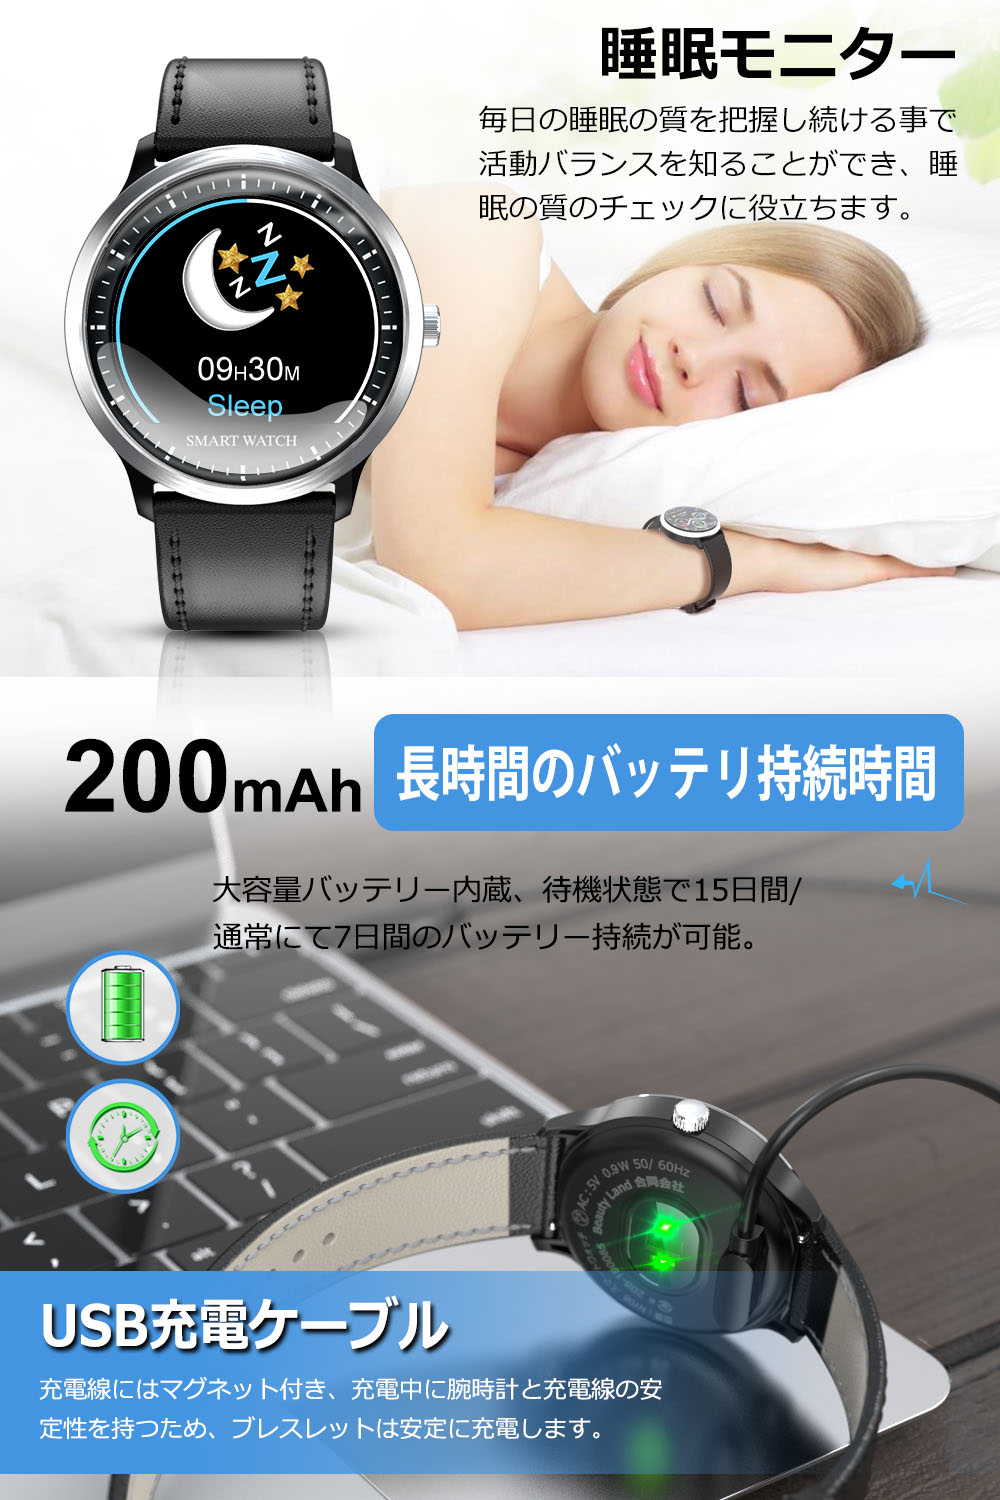 スマートウォッチ ブレスレット iphone android line対応 日本語説明書 心拍計 着信通知 防水 Bluetooth GPS 歩数計  セール品 スマートウォッチセール :NY08:KuKuYa - 通販 - Yahoo!ショッピング